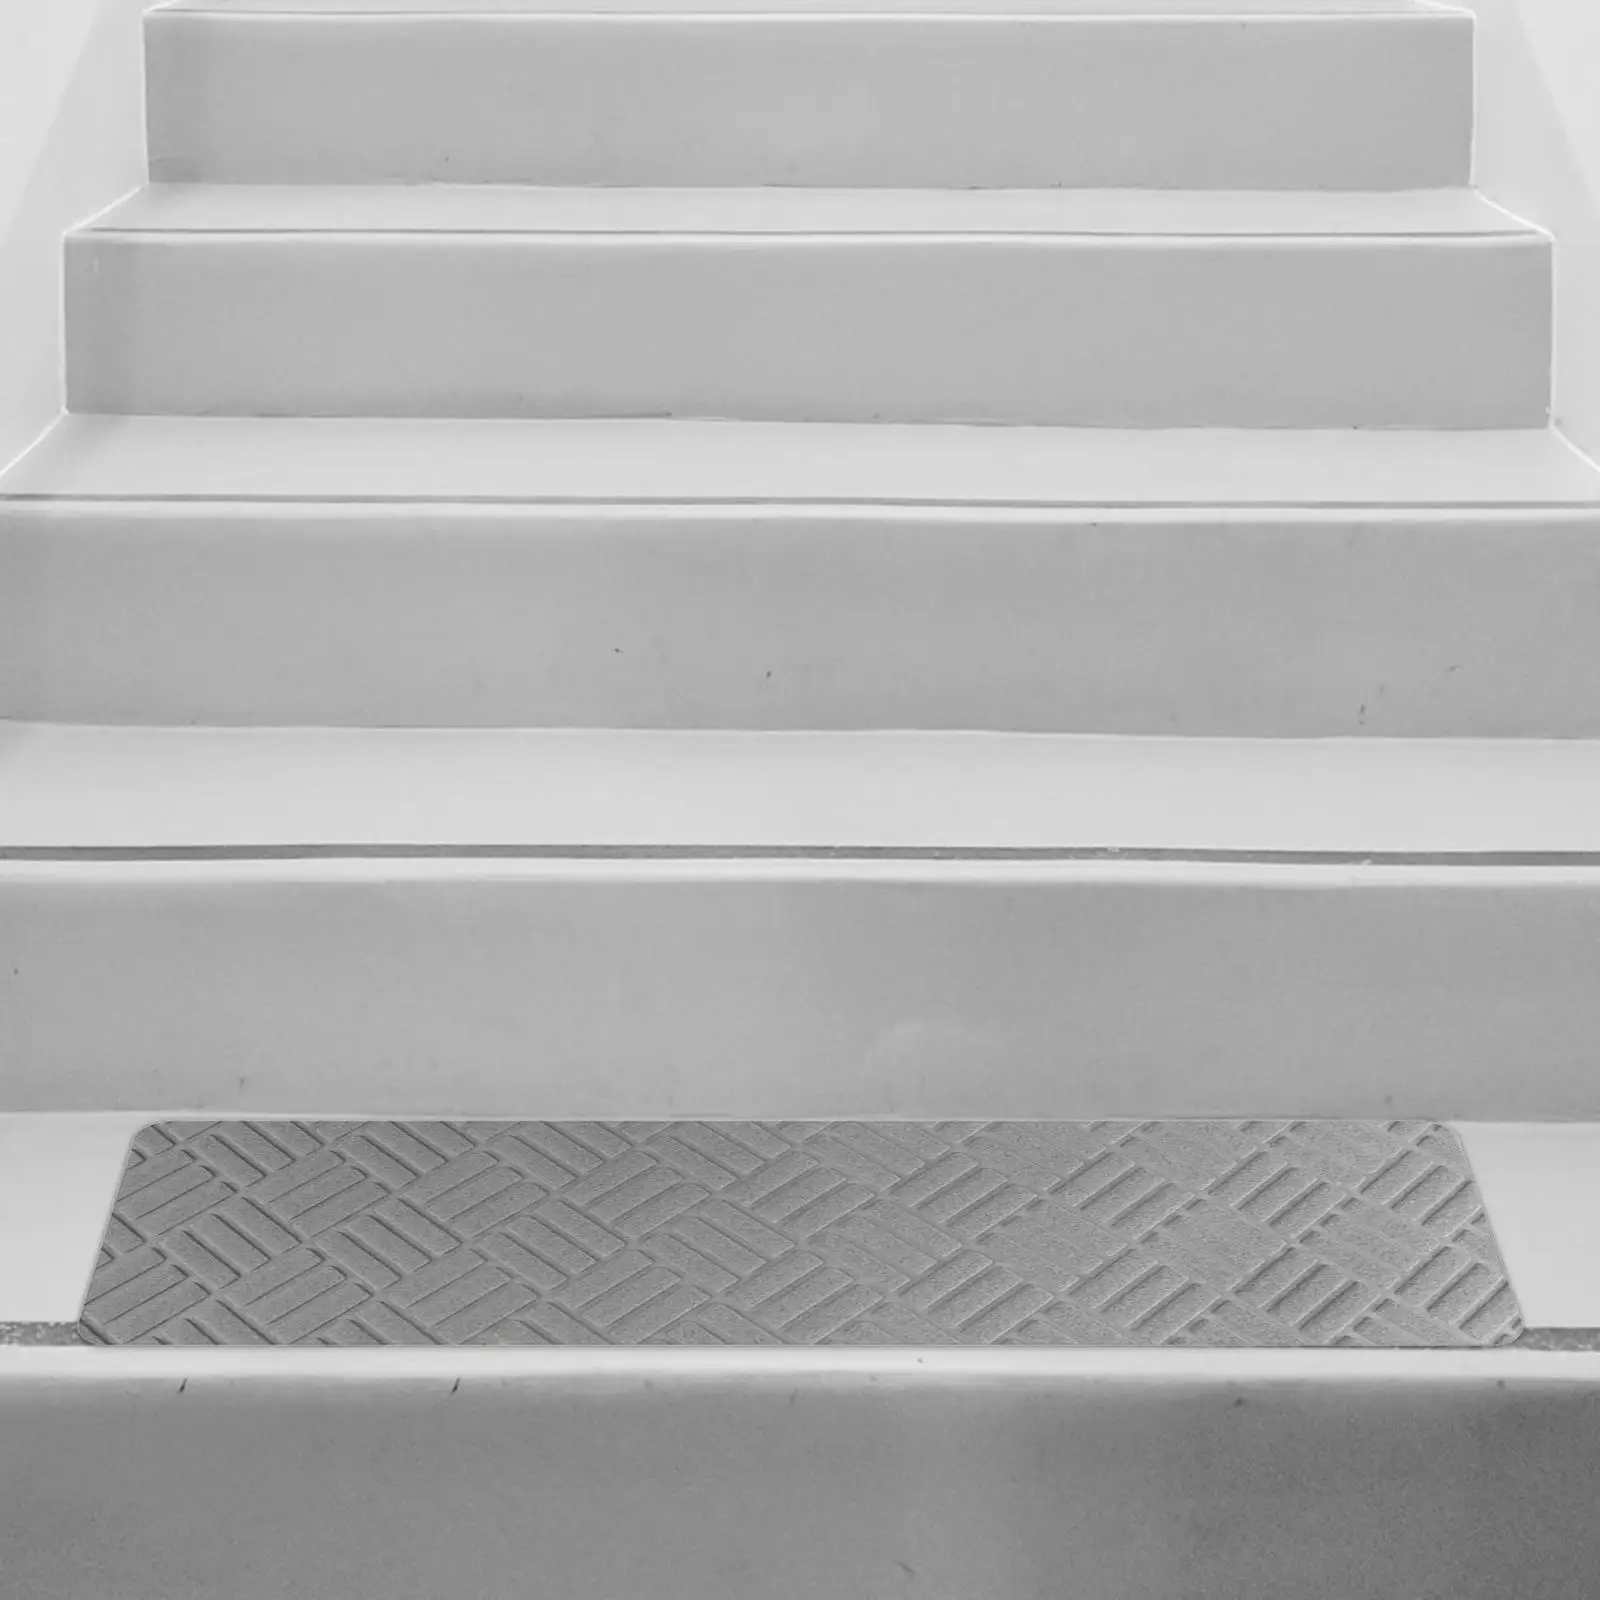 Stair Runner Carpet Stair Treads Soft Edging Stair Rugs Stair Carpet Treads Strips for Bedroom Restaurant Living Room